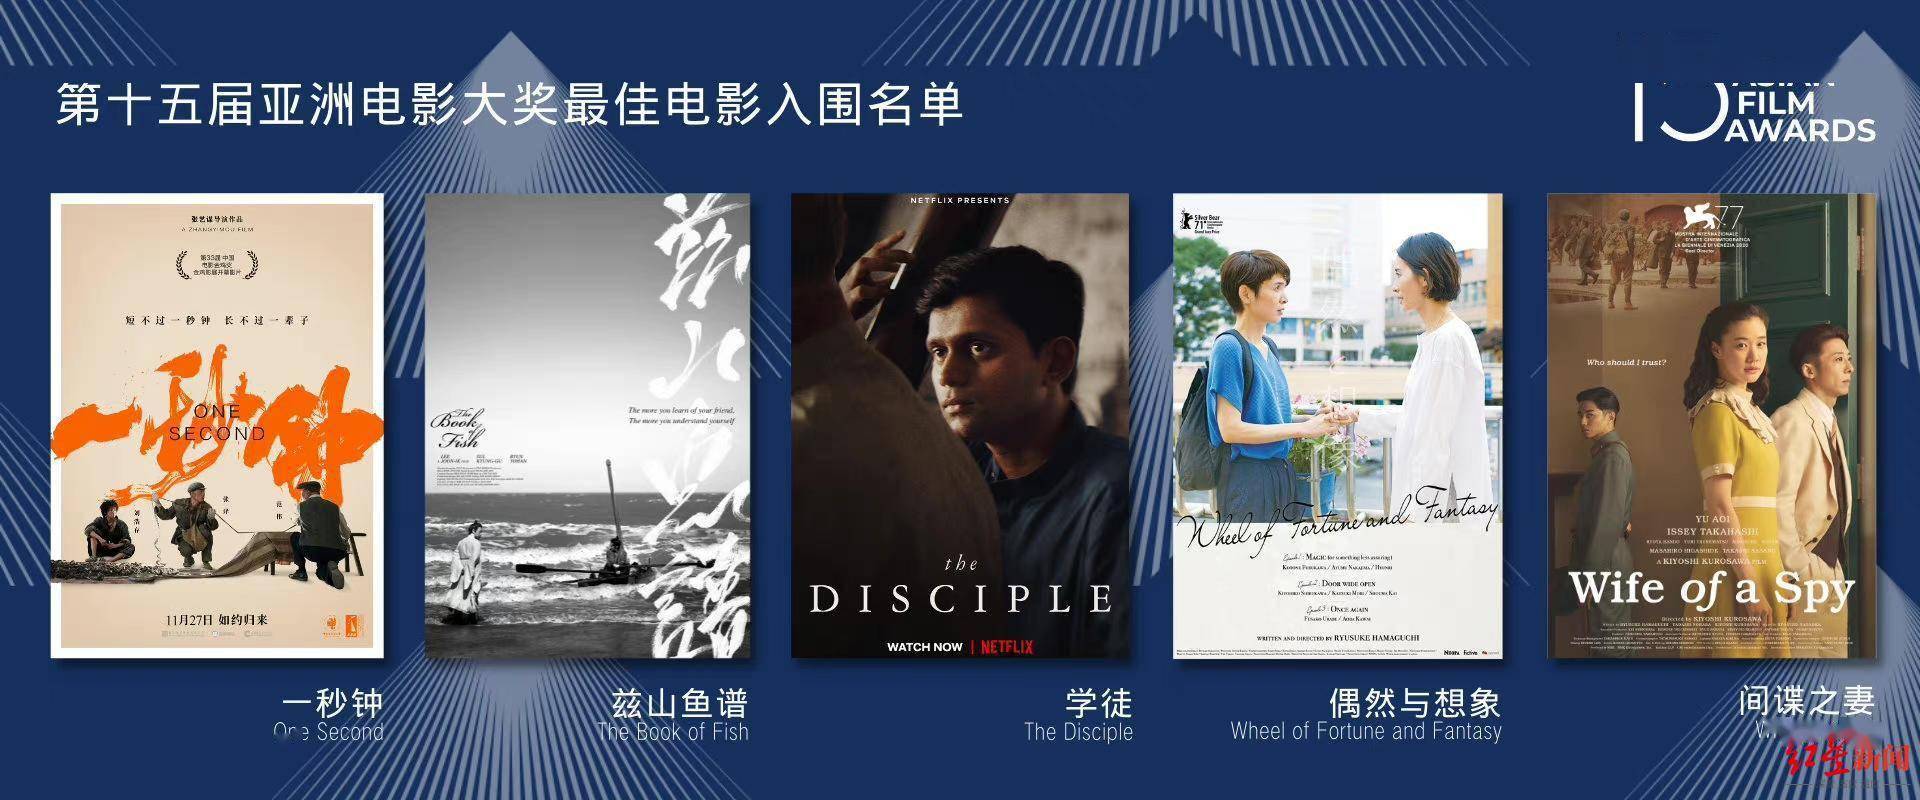 第15屆亞洲電影大獎公佈入圍名單 張藝謀兩部作品獲11項提名